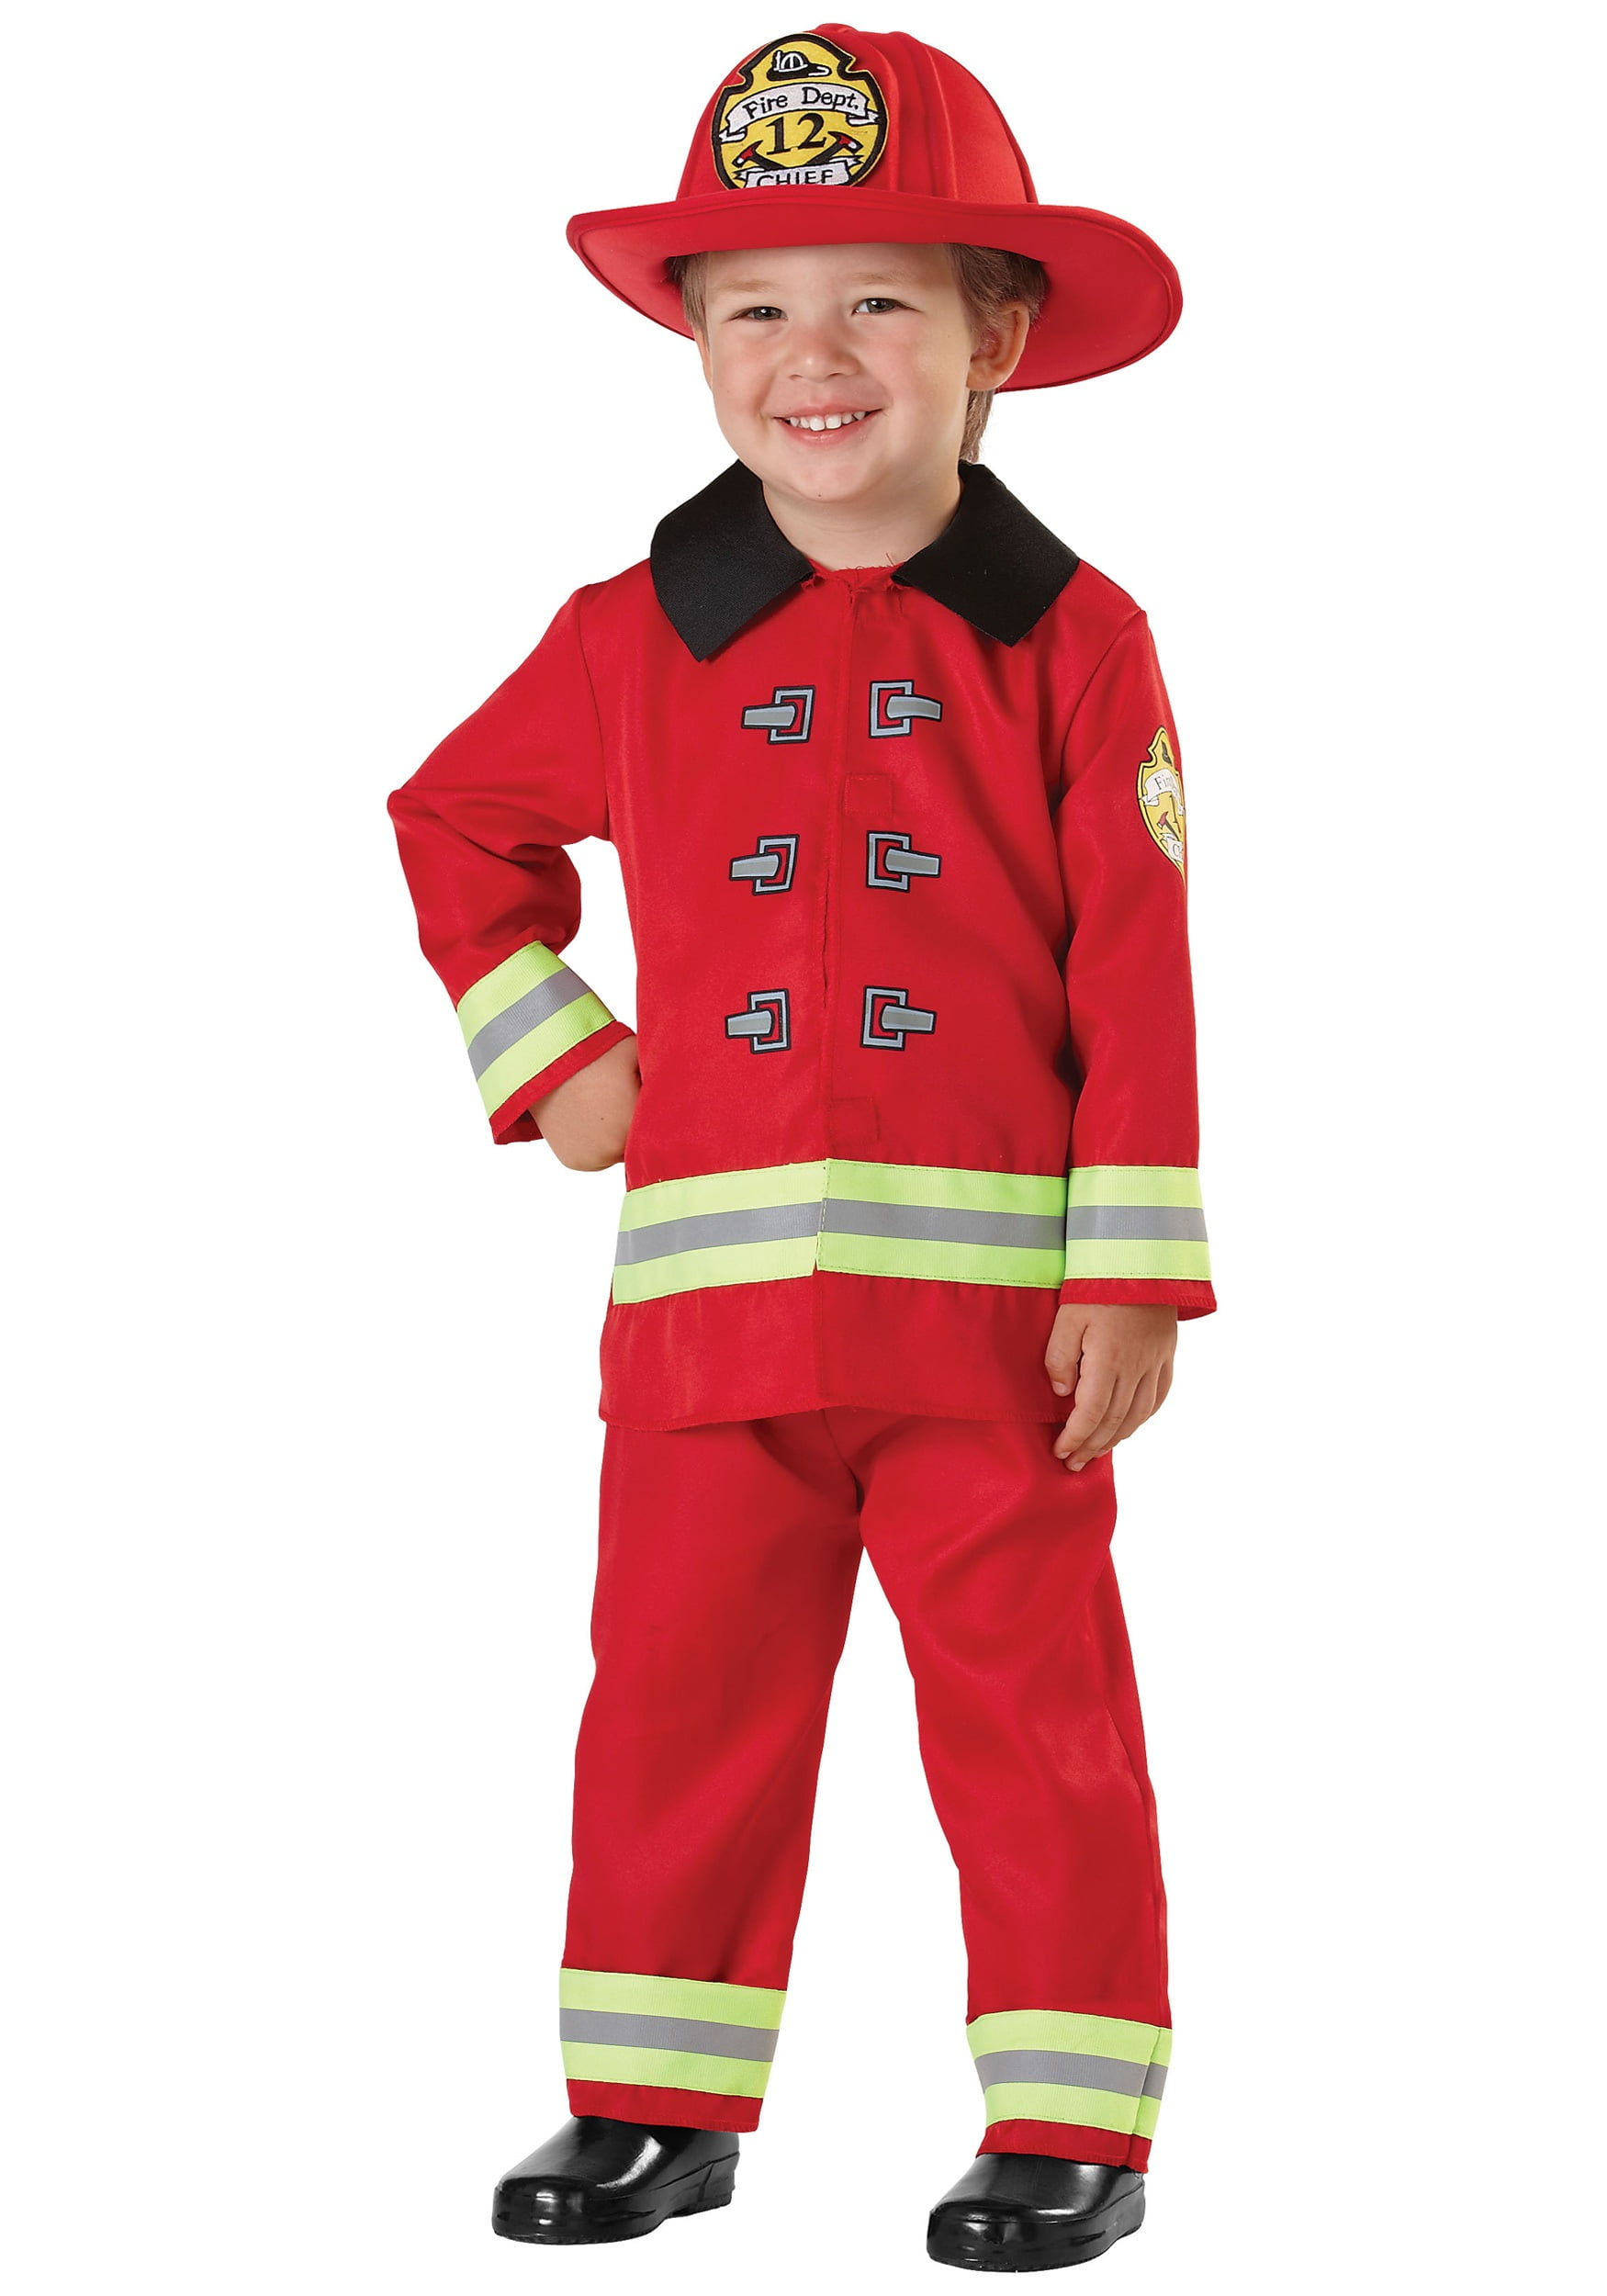 Grebrafan Fireman Costume accessories for Kids Firefighter Toddler Boys 